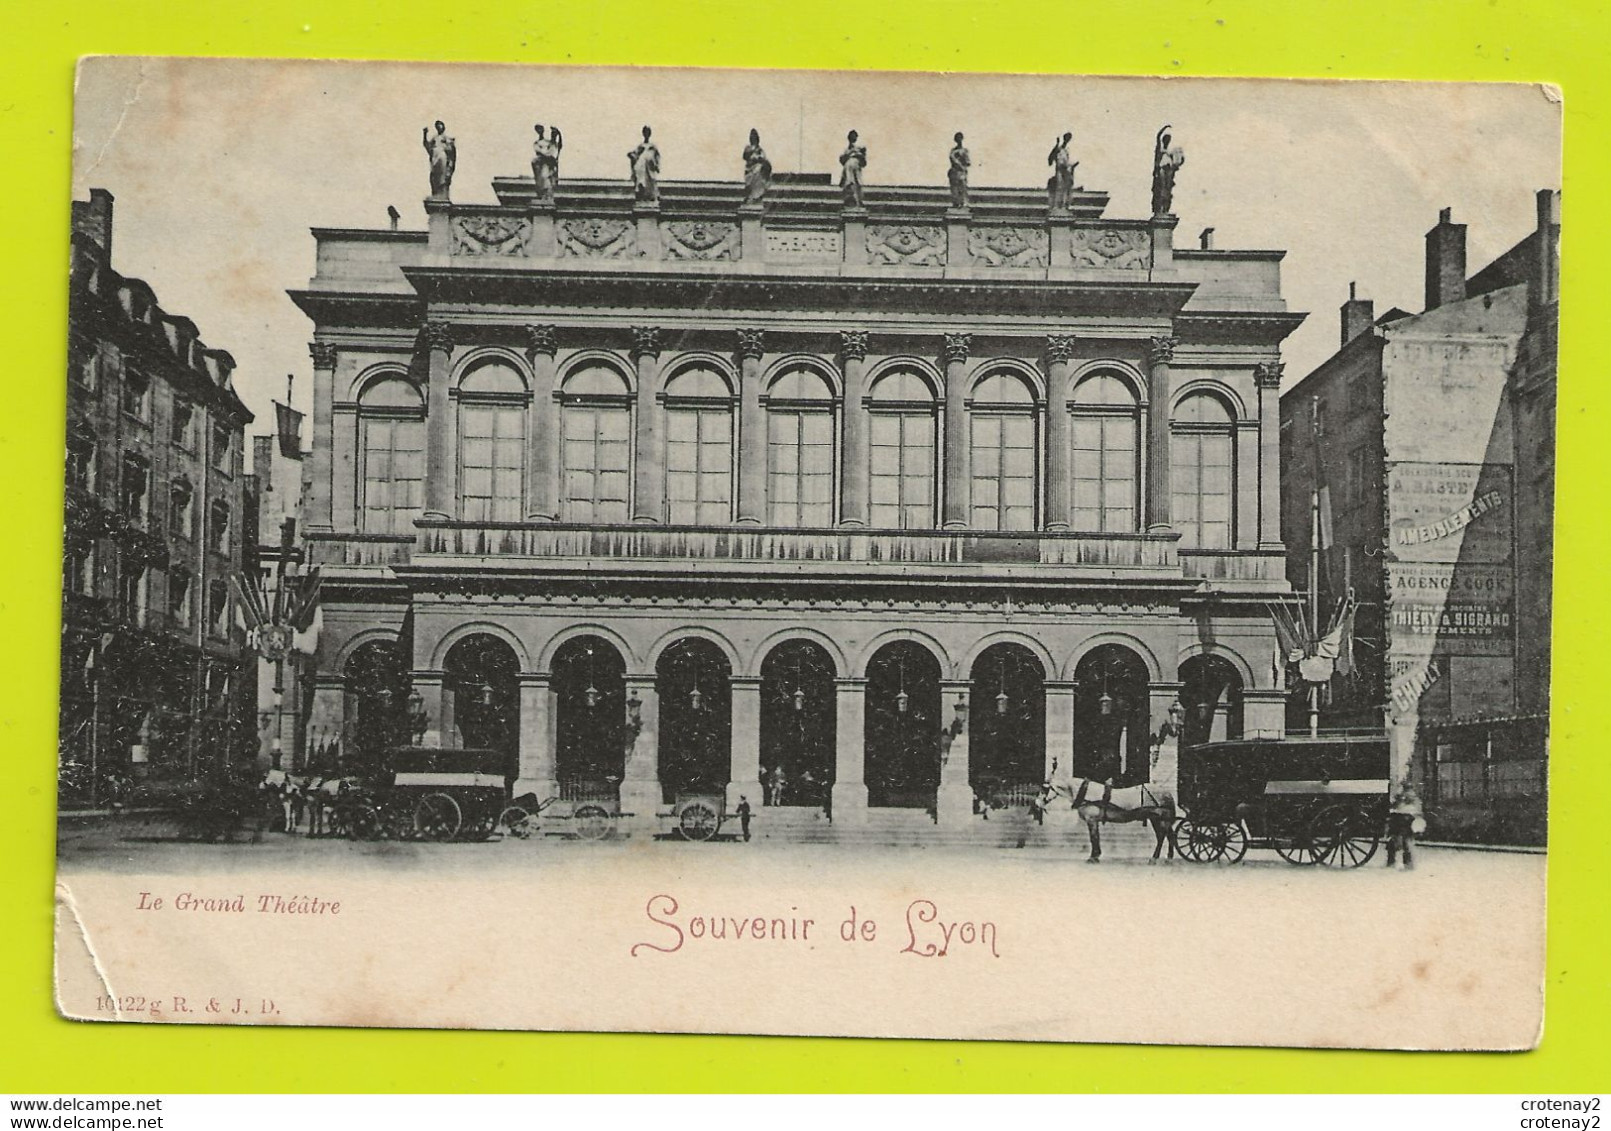 69 LYON 5ème Le Grand Théâtre Attelages Chevaux Mur De PUB Apéritif Chably Thierry & Sigrand VOIR DOS Avant 1905 - Lyon 5